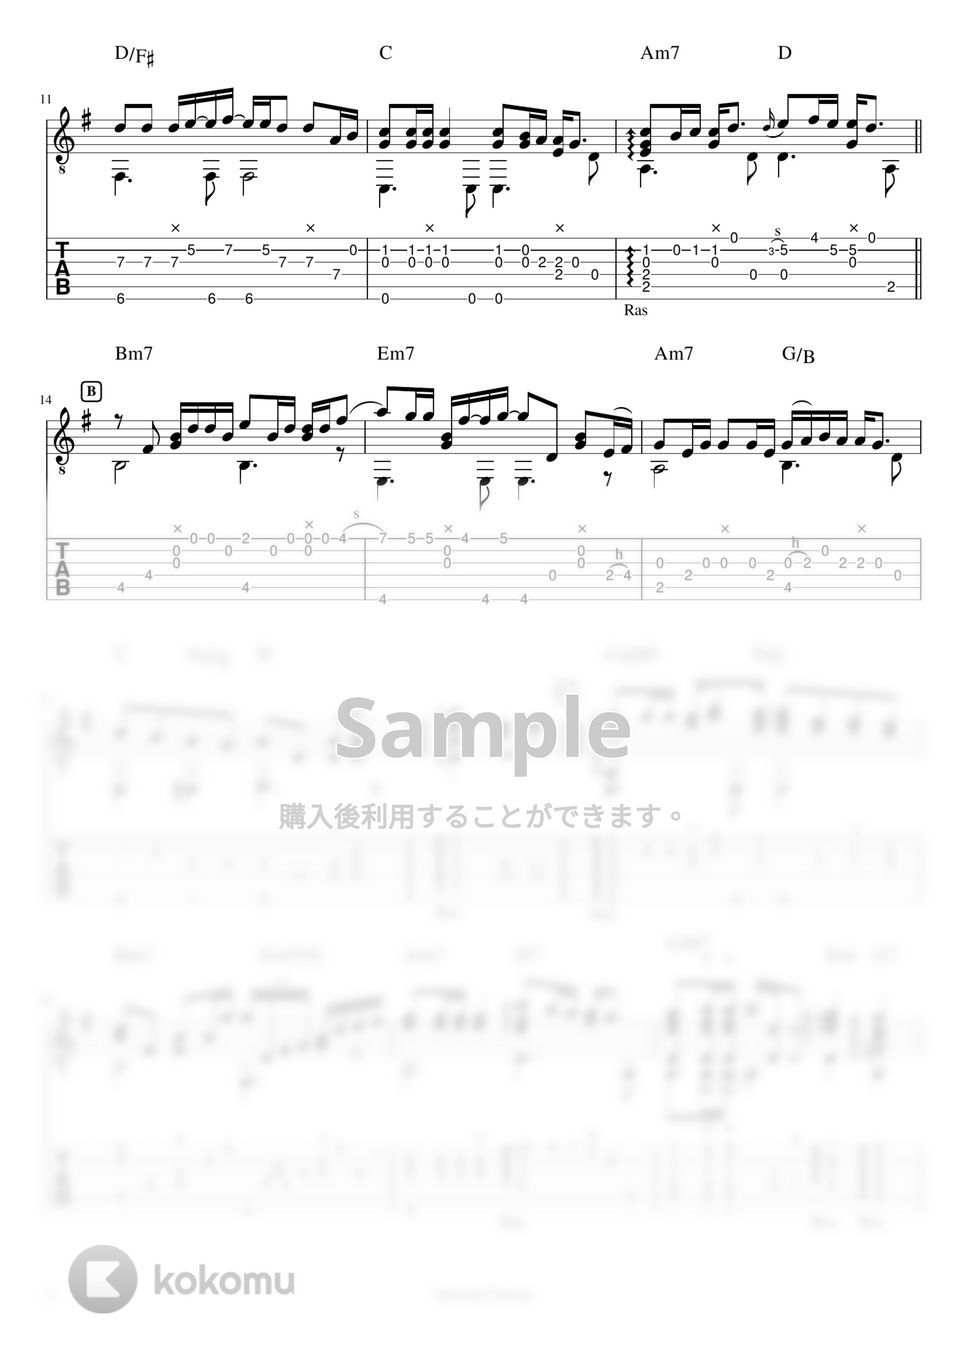 中西保志 - 最後の雨 (ソロギターTAB譜) by 仲内拓磨